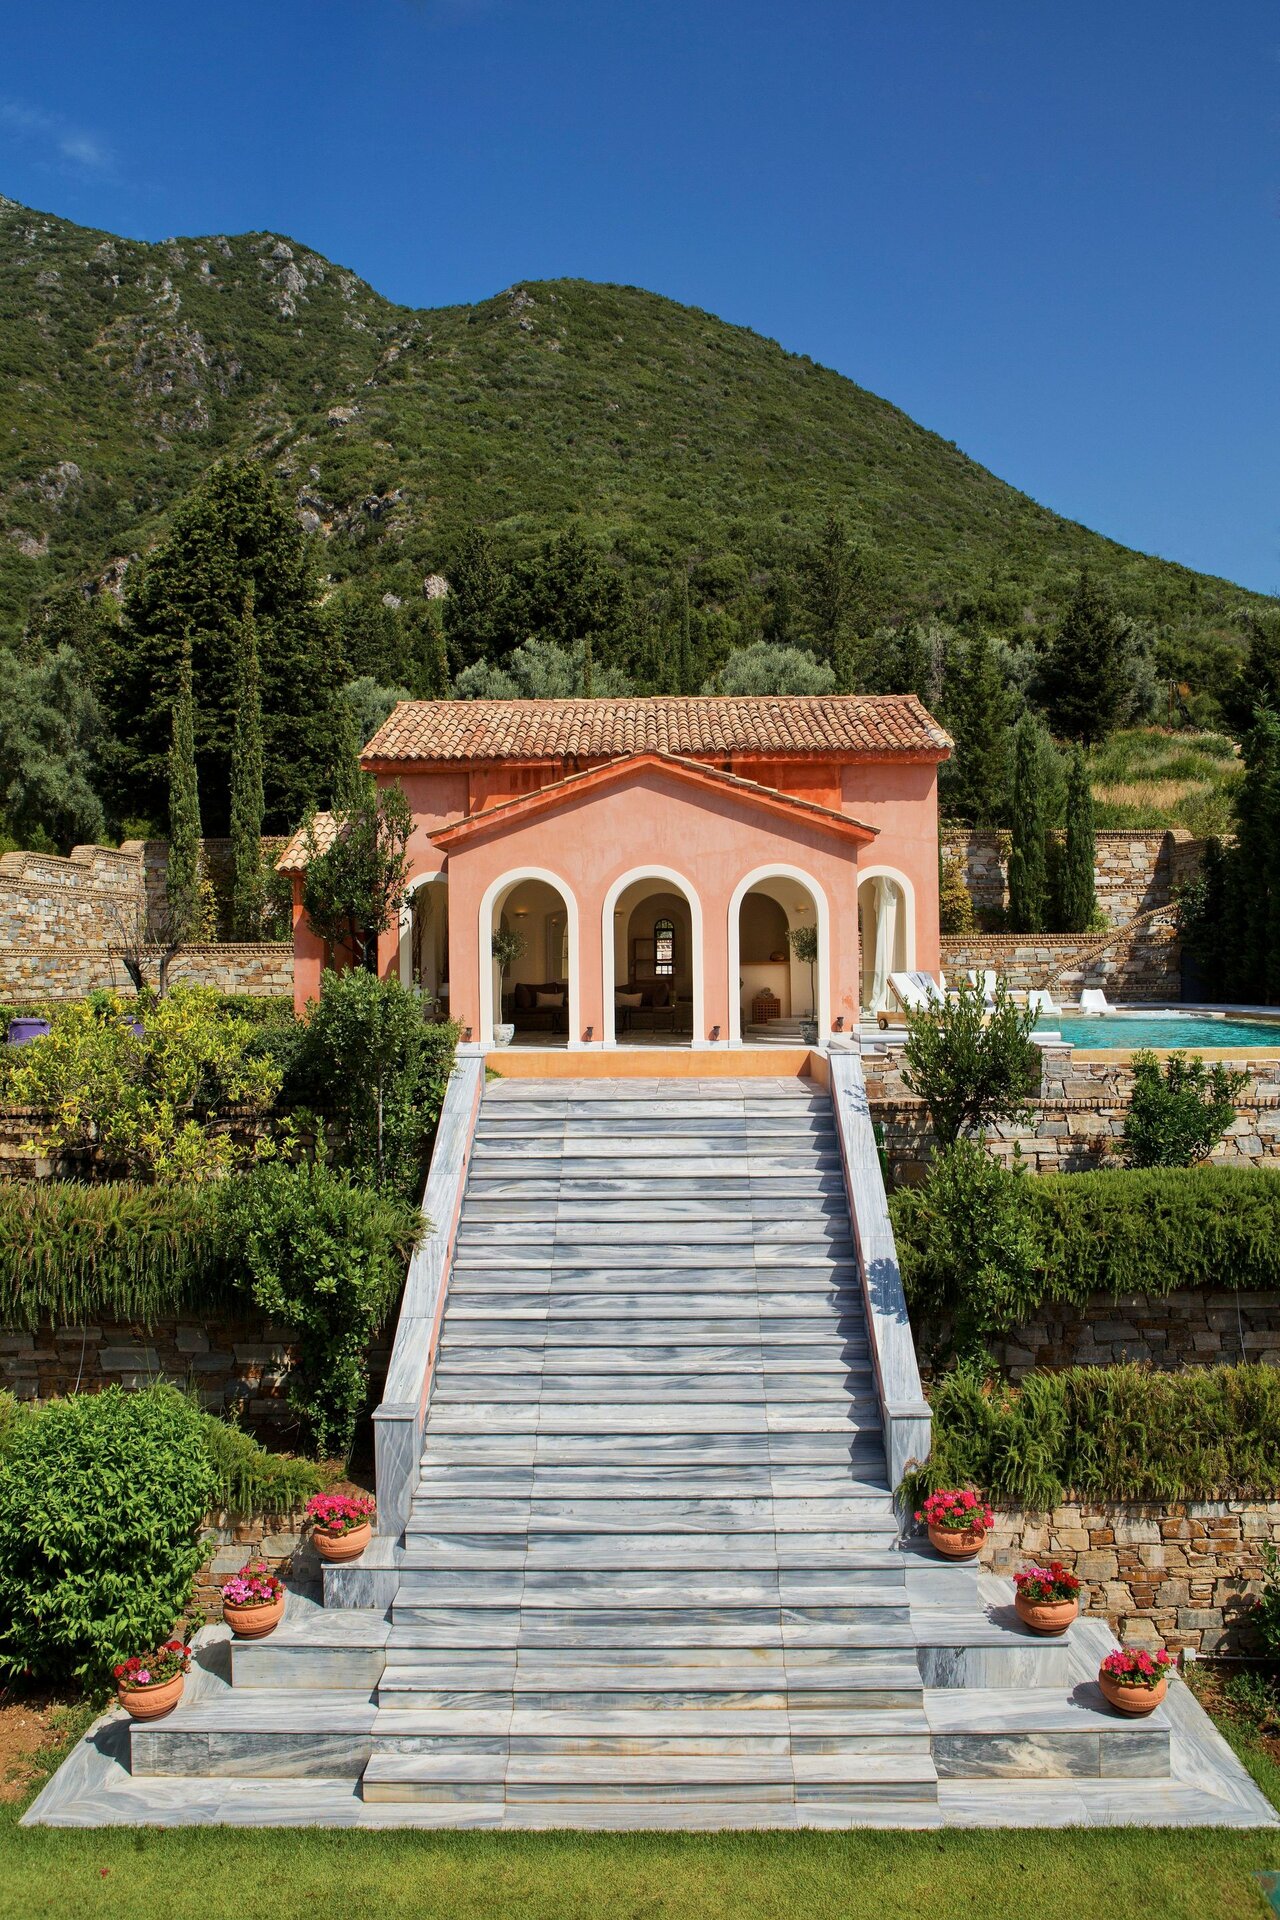 Villa Veneziano Lefkada